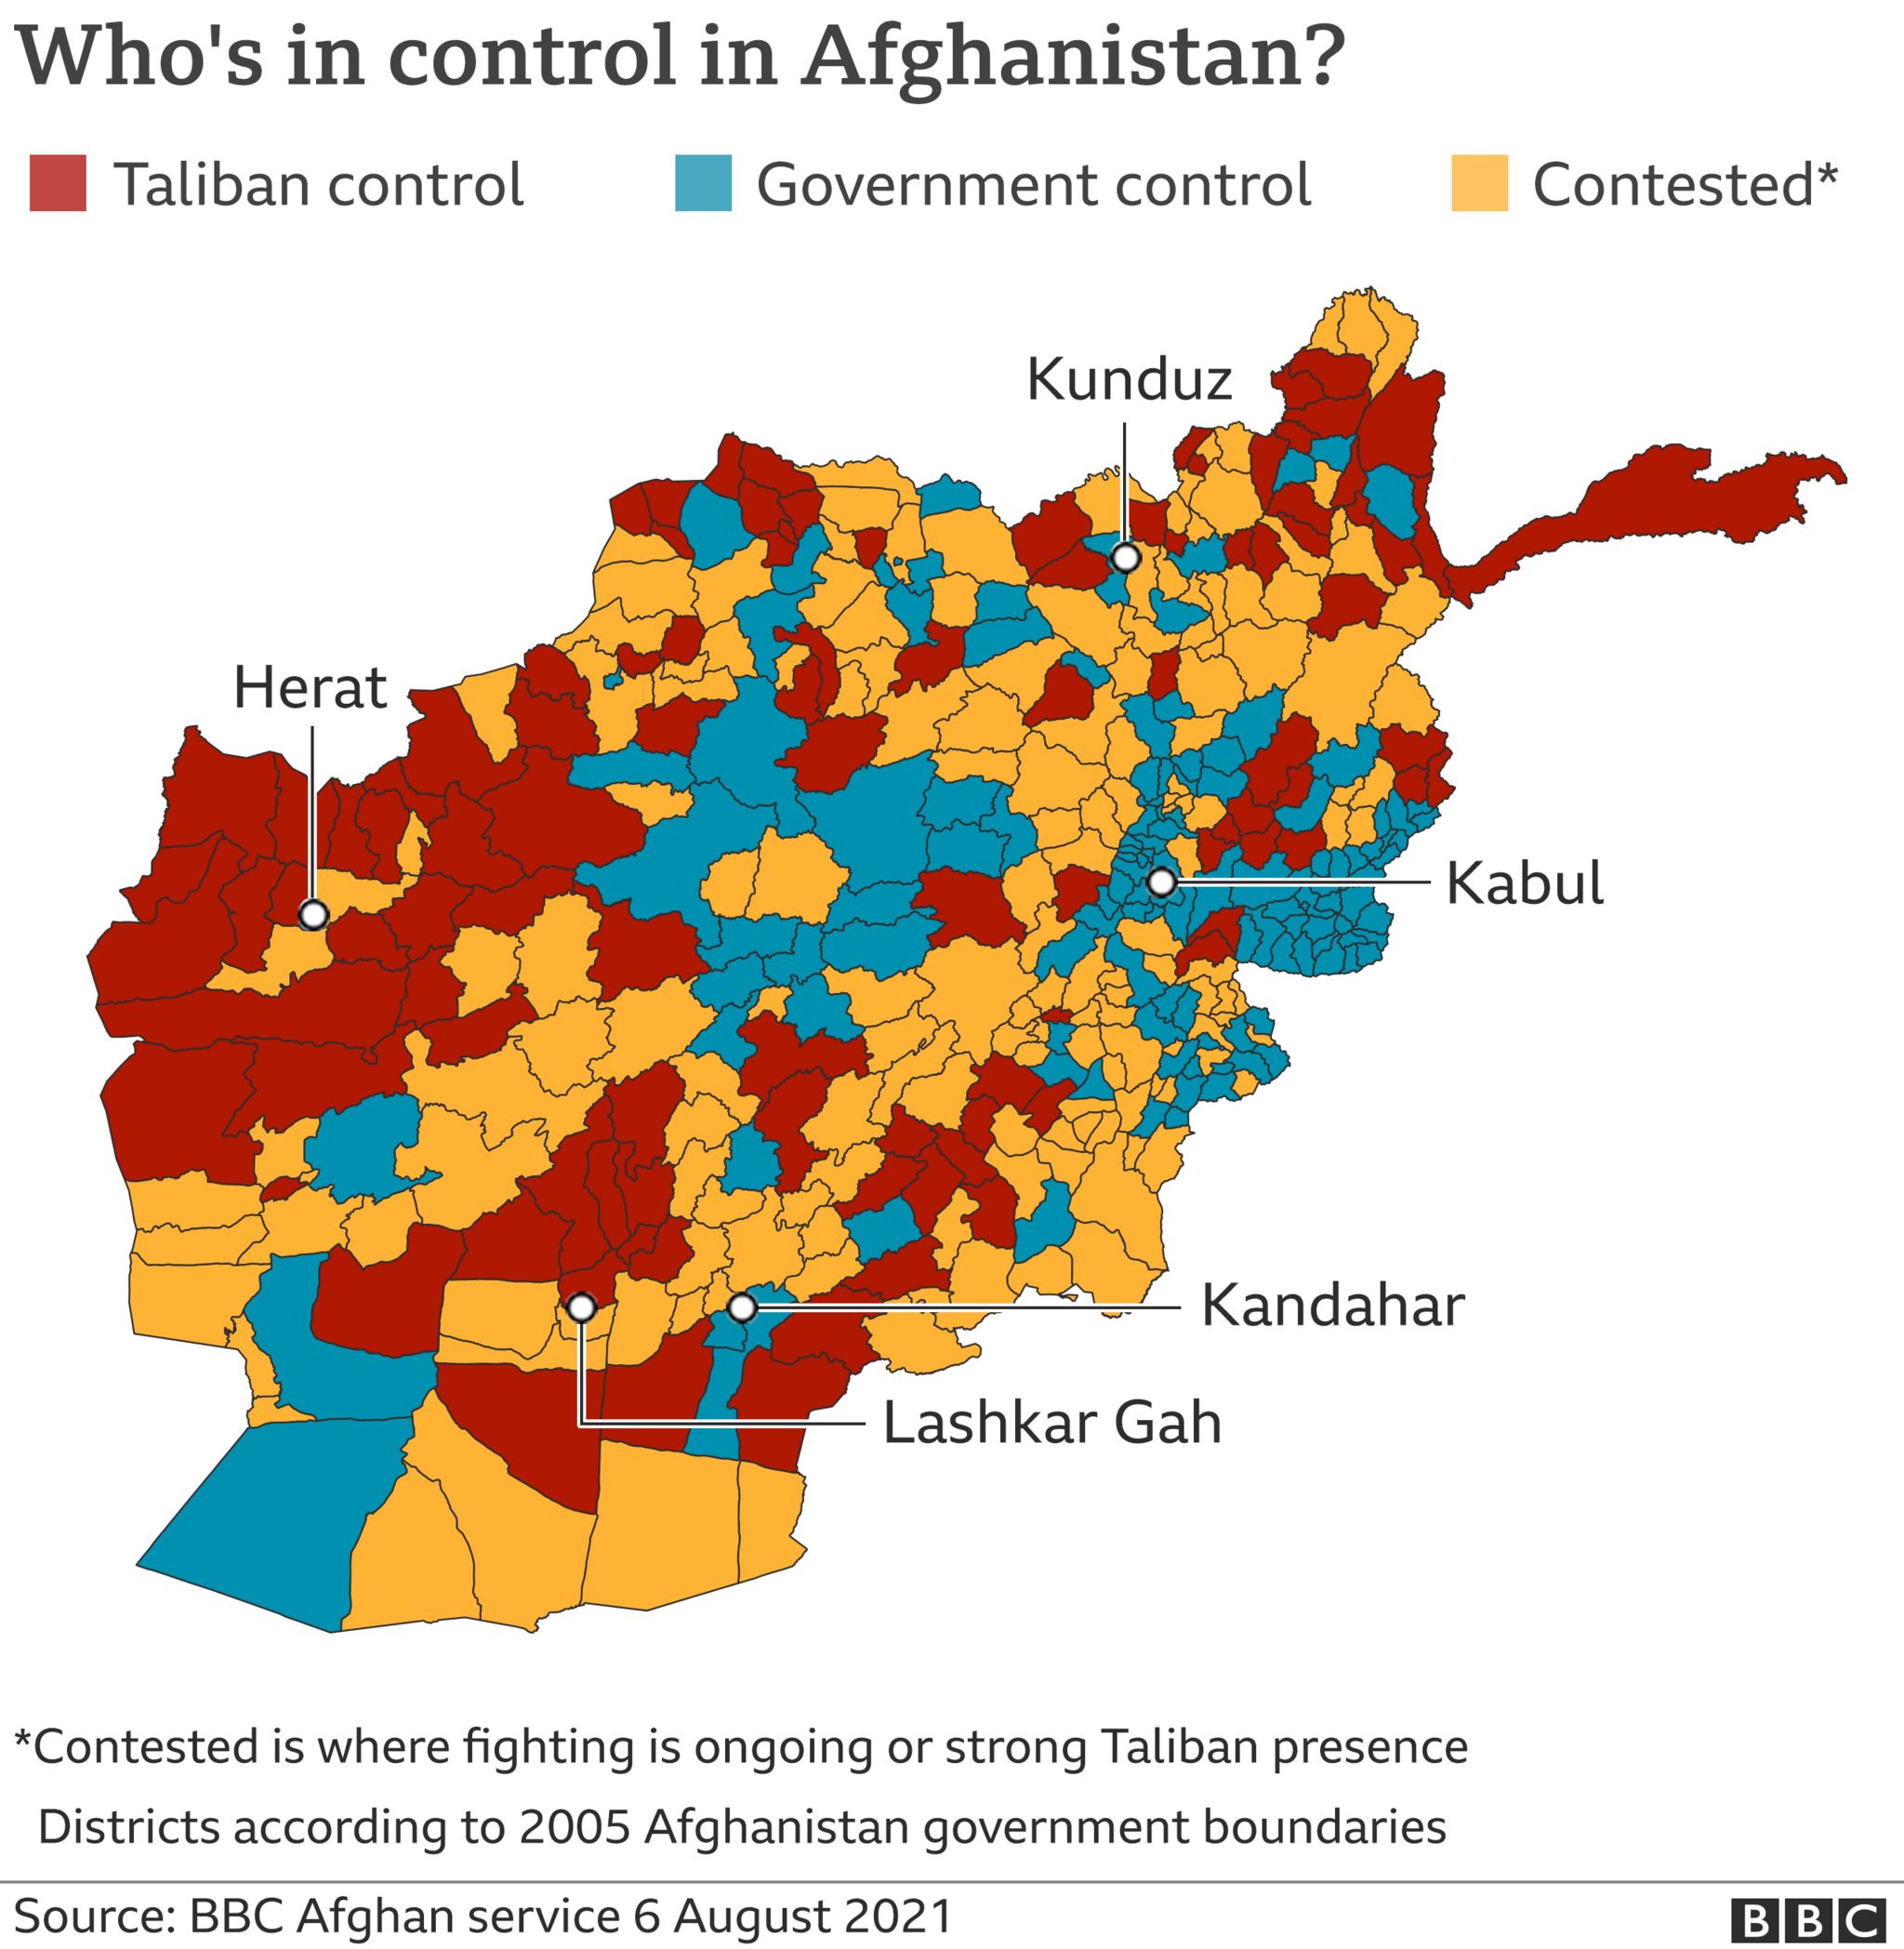 Карта Афганистана с указанием территорий, которые оспариваются, находятся под полным контролем Талибана или под контролем правительства, обновленная 5 августа 2021 г.